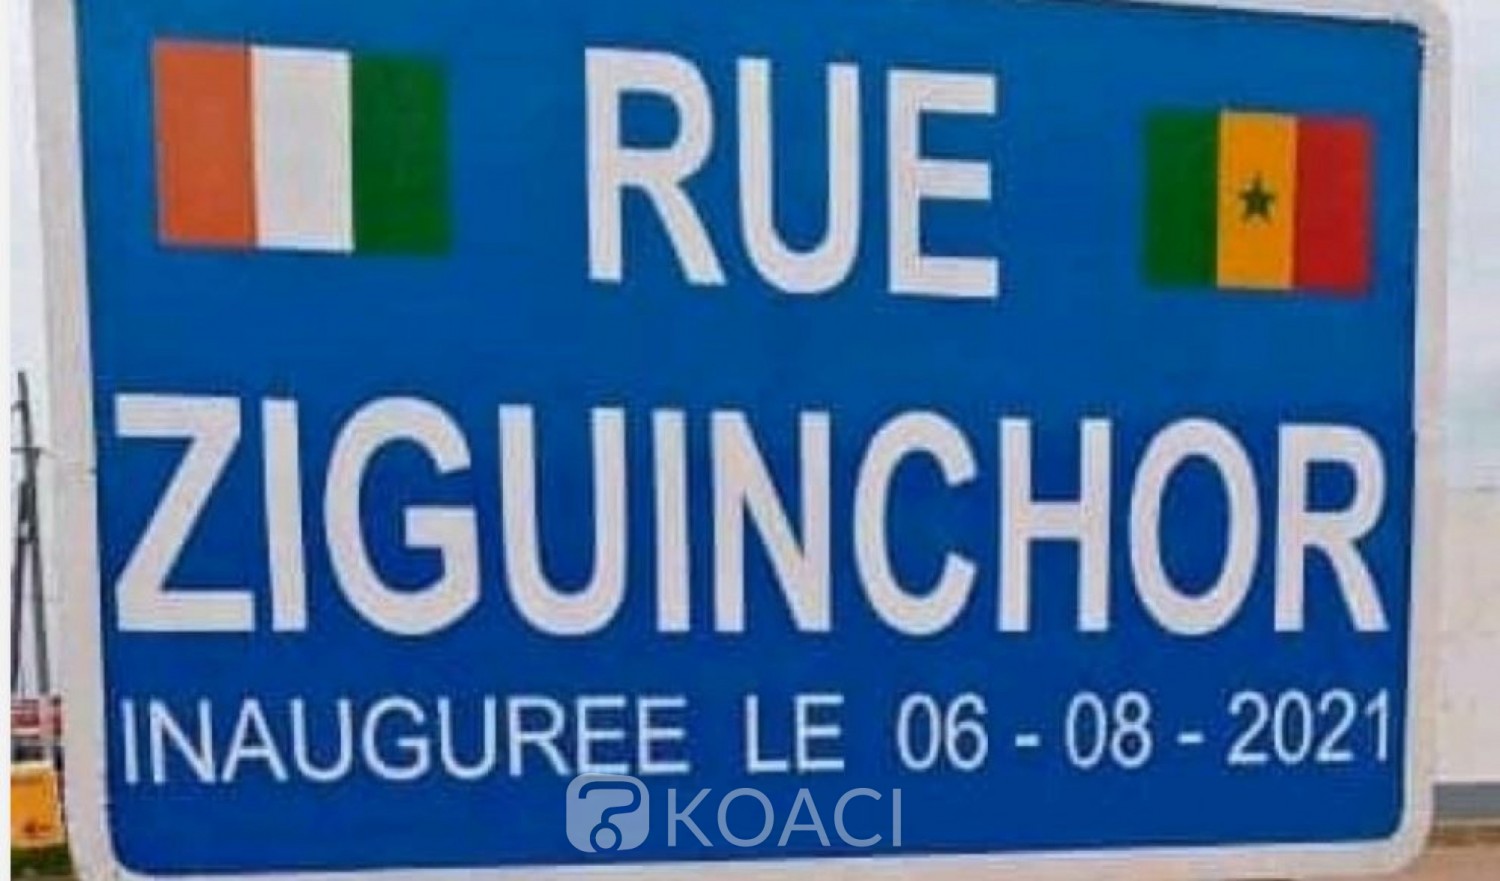 Côte d'Ivoire : Coopération Sud-Sud, la « Rue Ziguinchor » baptisée à Bouaké